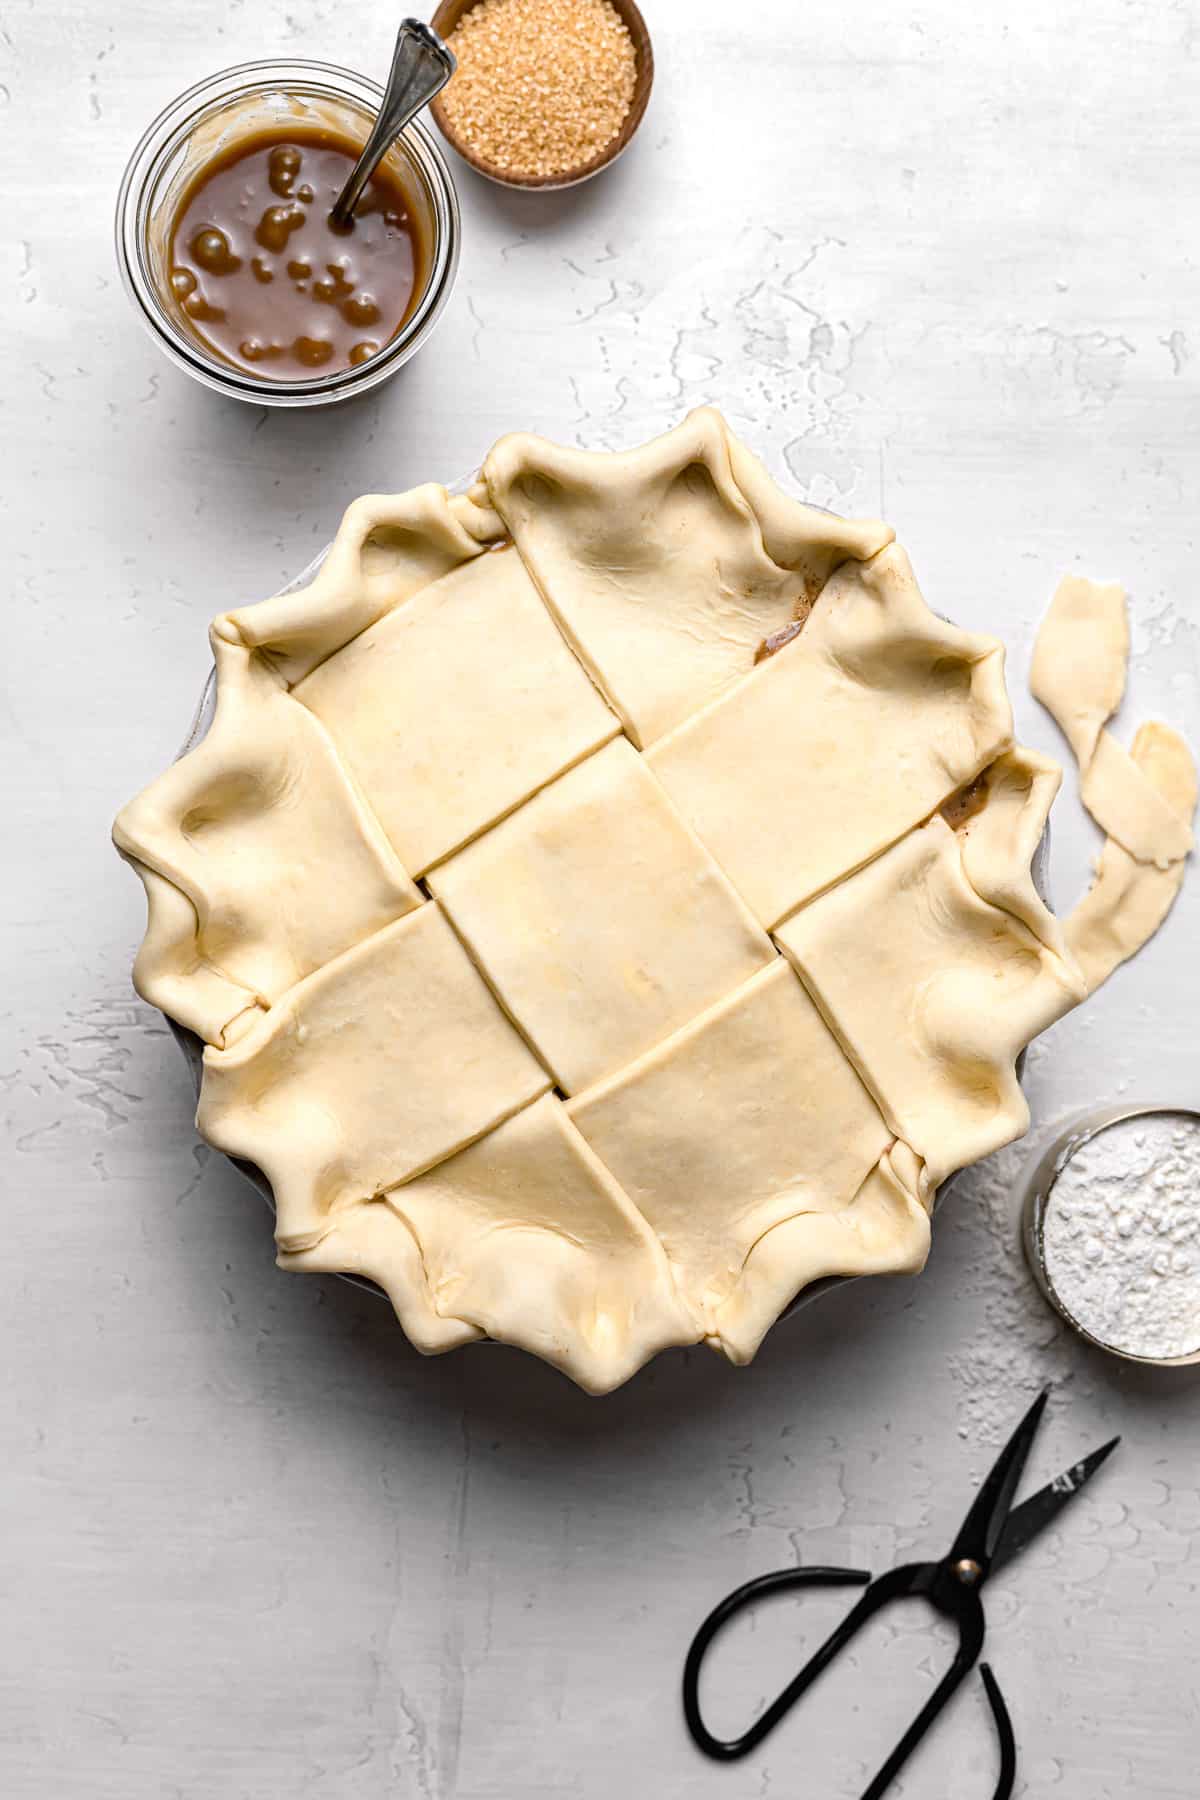 unbaked apple pie with lattice top